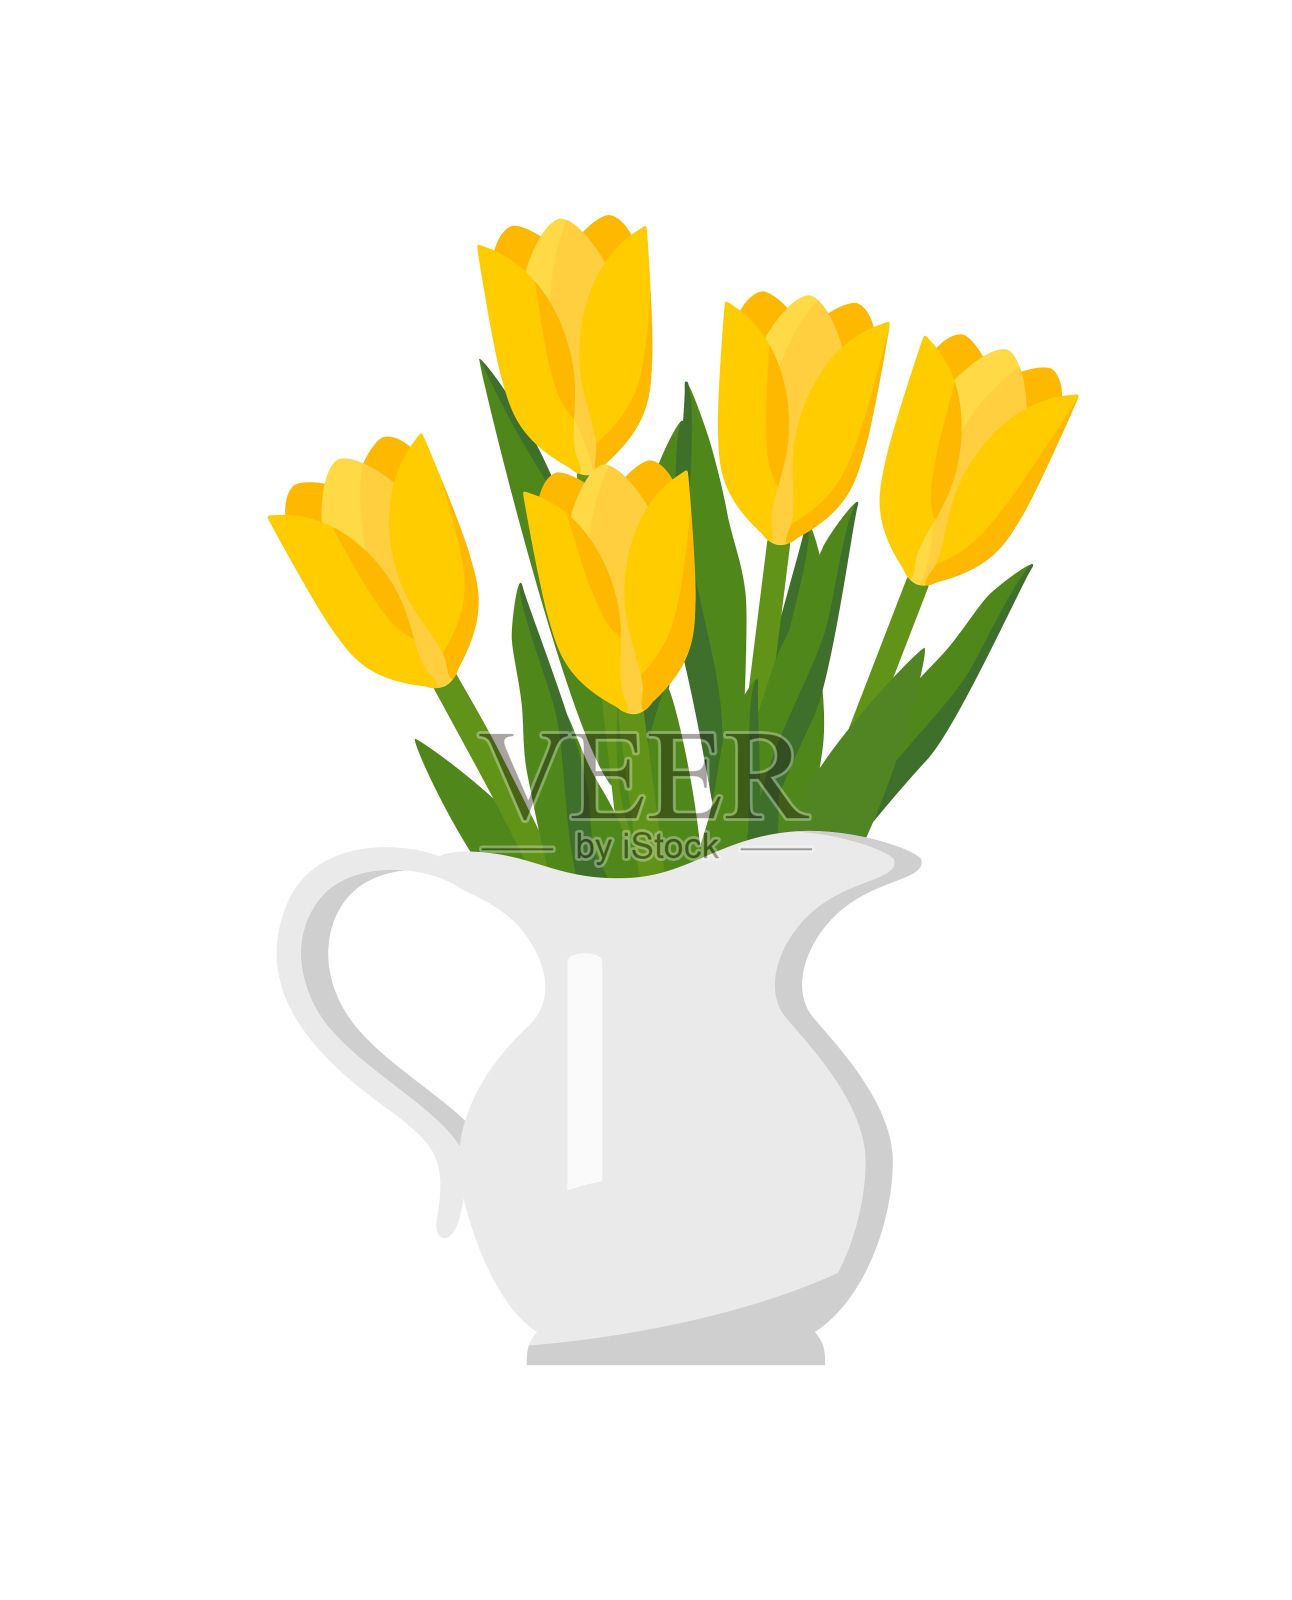 壶里有一束黄色郁金香。春季花束概念设计。设计元素图片